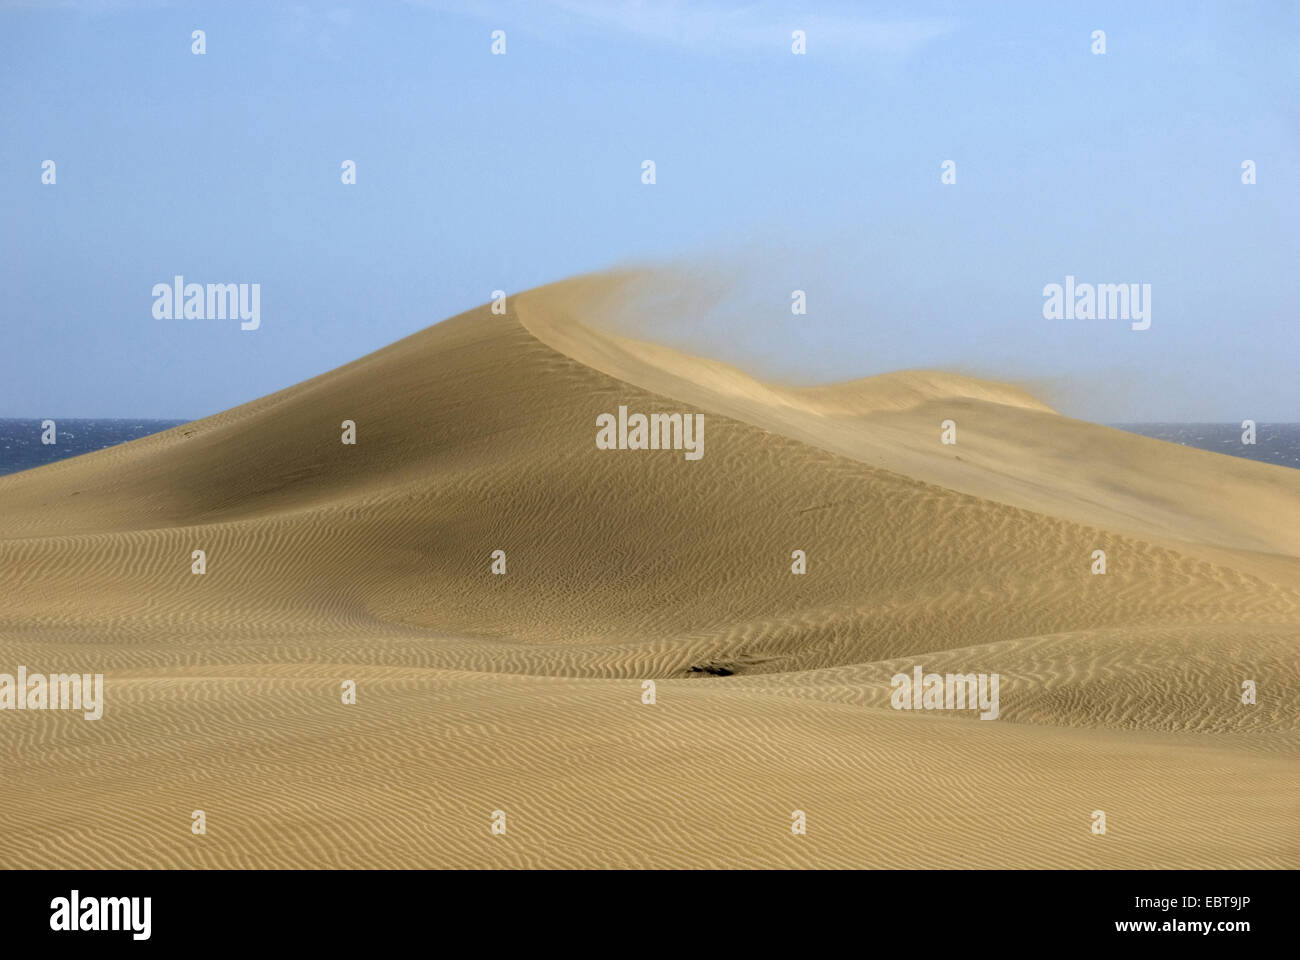 La brise souffle le sable d'une dune à la mer, îles Canaries, Grande Canarie, Maspalomas Banque D'Images